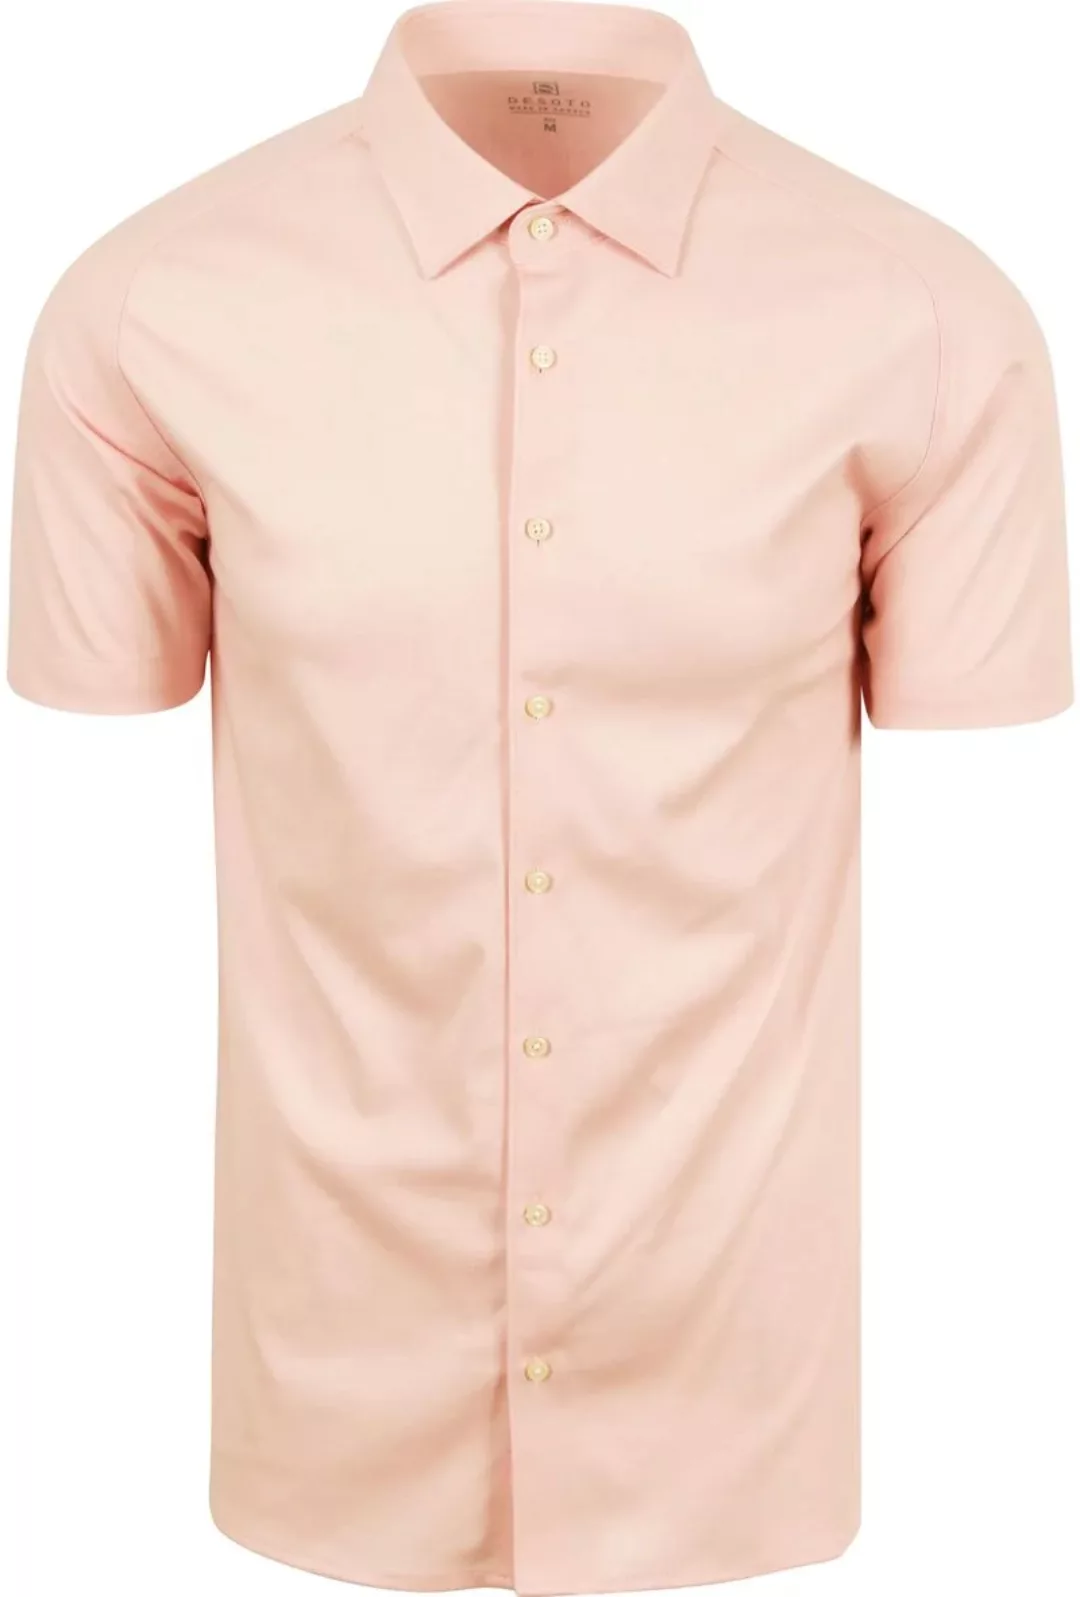 Desoto Short Sleeve Jersey Hemd Apricot Rosa - Größe 3XL günstig online kaufen